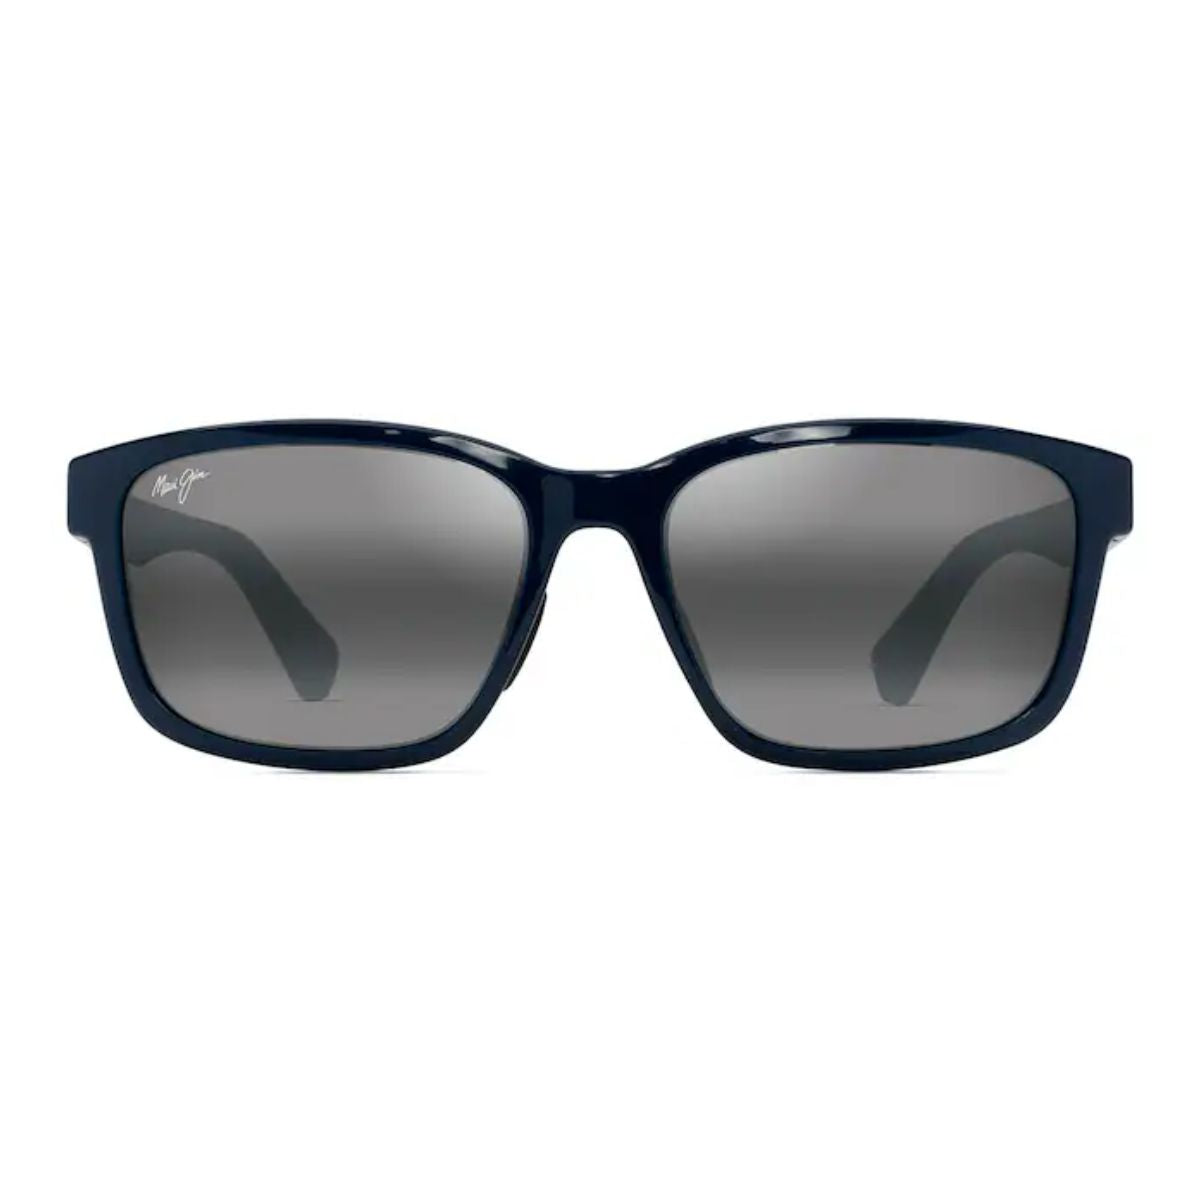 "Shop Stylish Maui Jim Square Polarized Sunglasses For Men | Discounted Maui Jim Sunglasses For Men's"